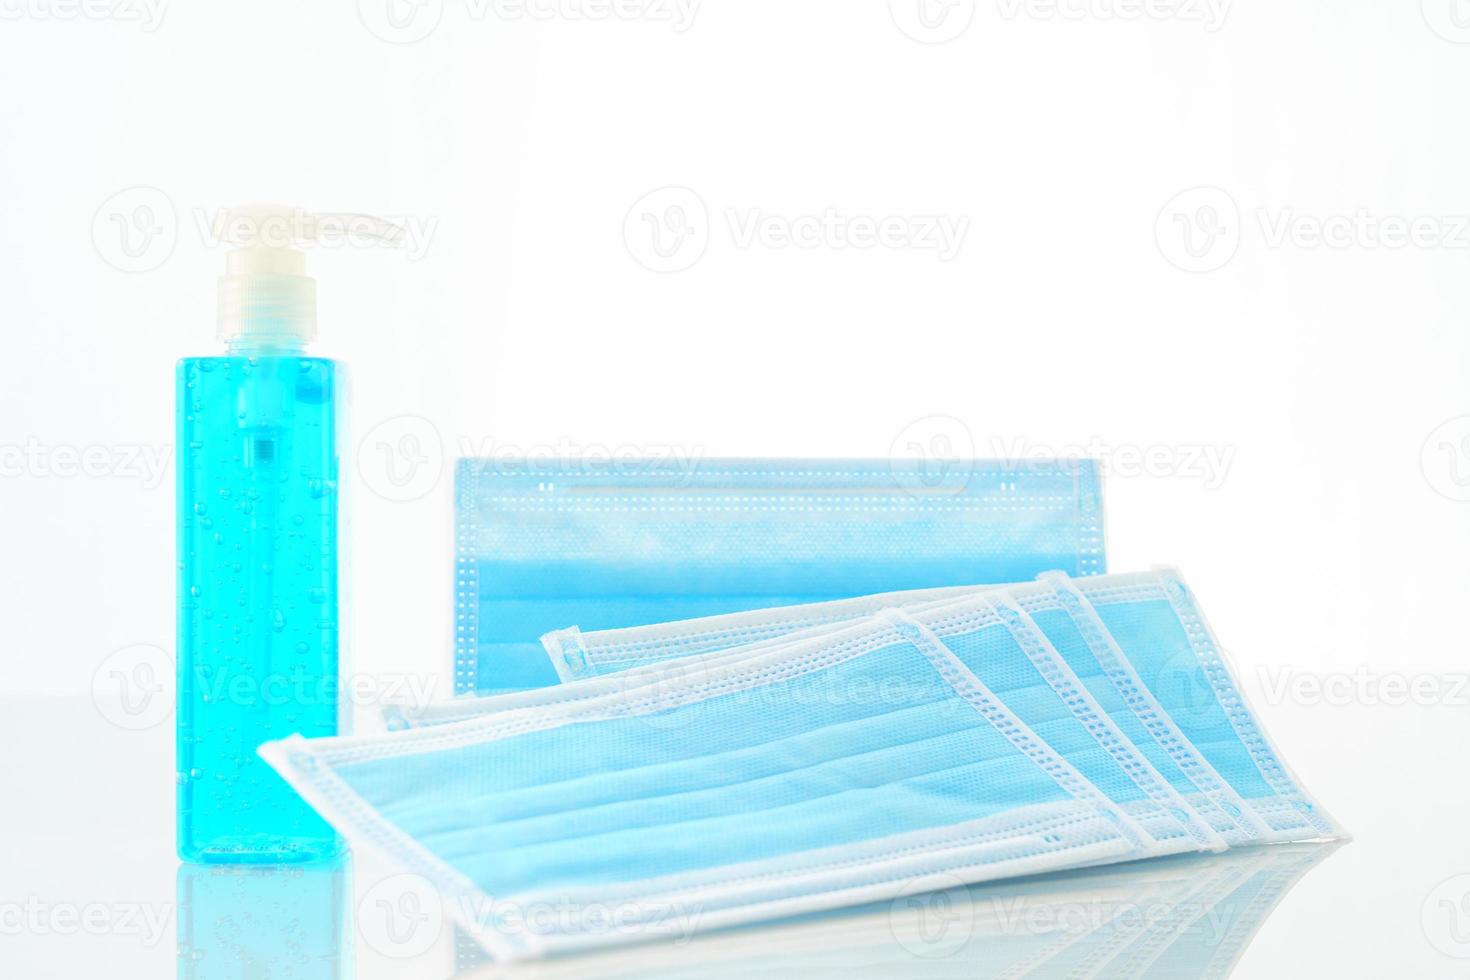 https://static.vecteezy.com/ti/fotos-kostenlos/p1/17564479-medizinische-gesichtsmasken-und-alkohol-gel-flaschen-desinfektionsmittelhand-foto.jpg